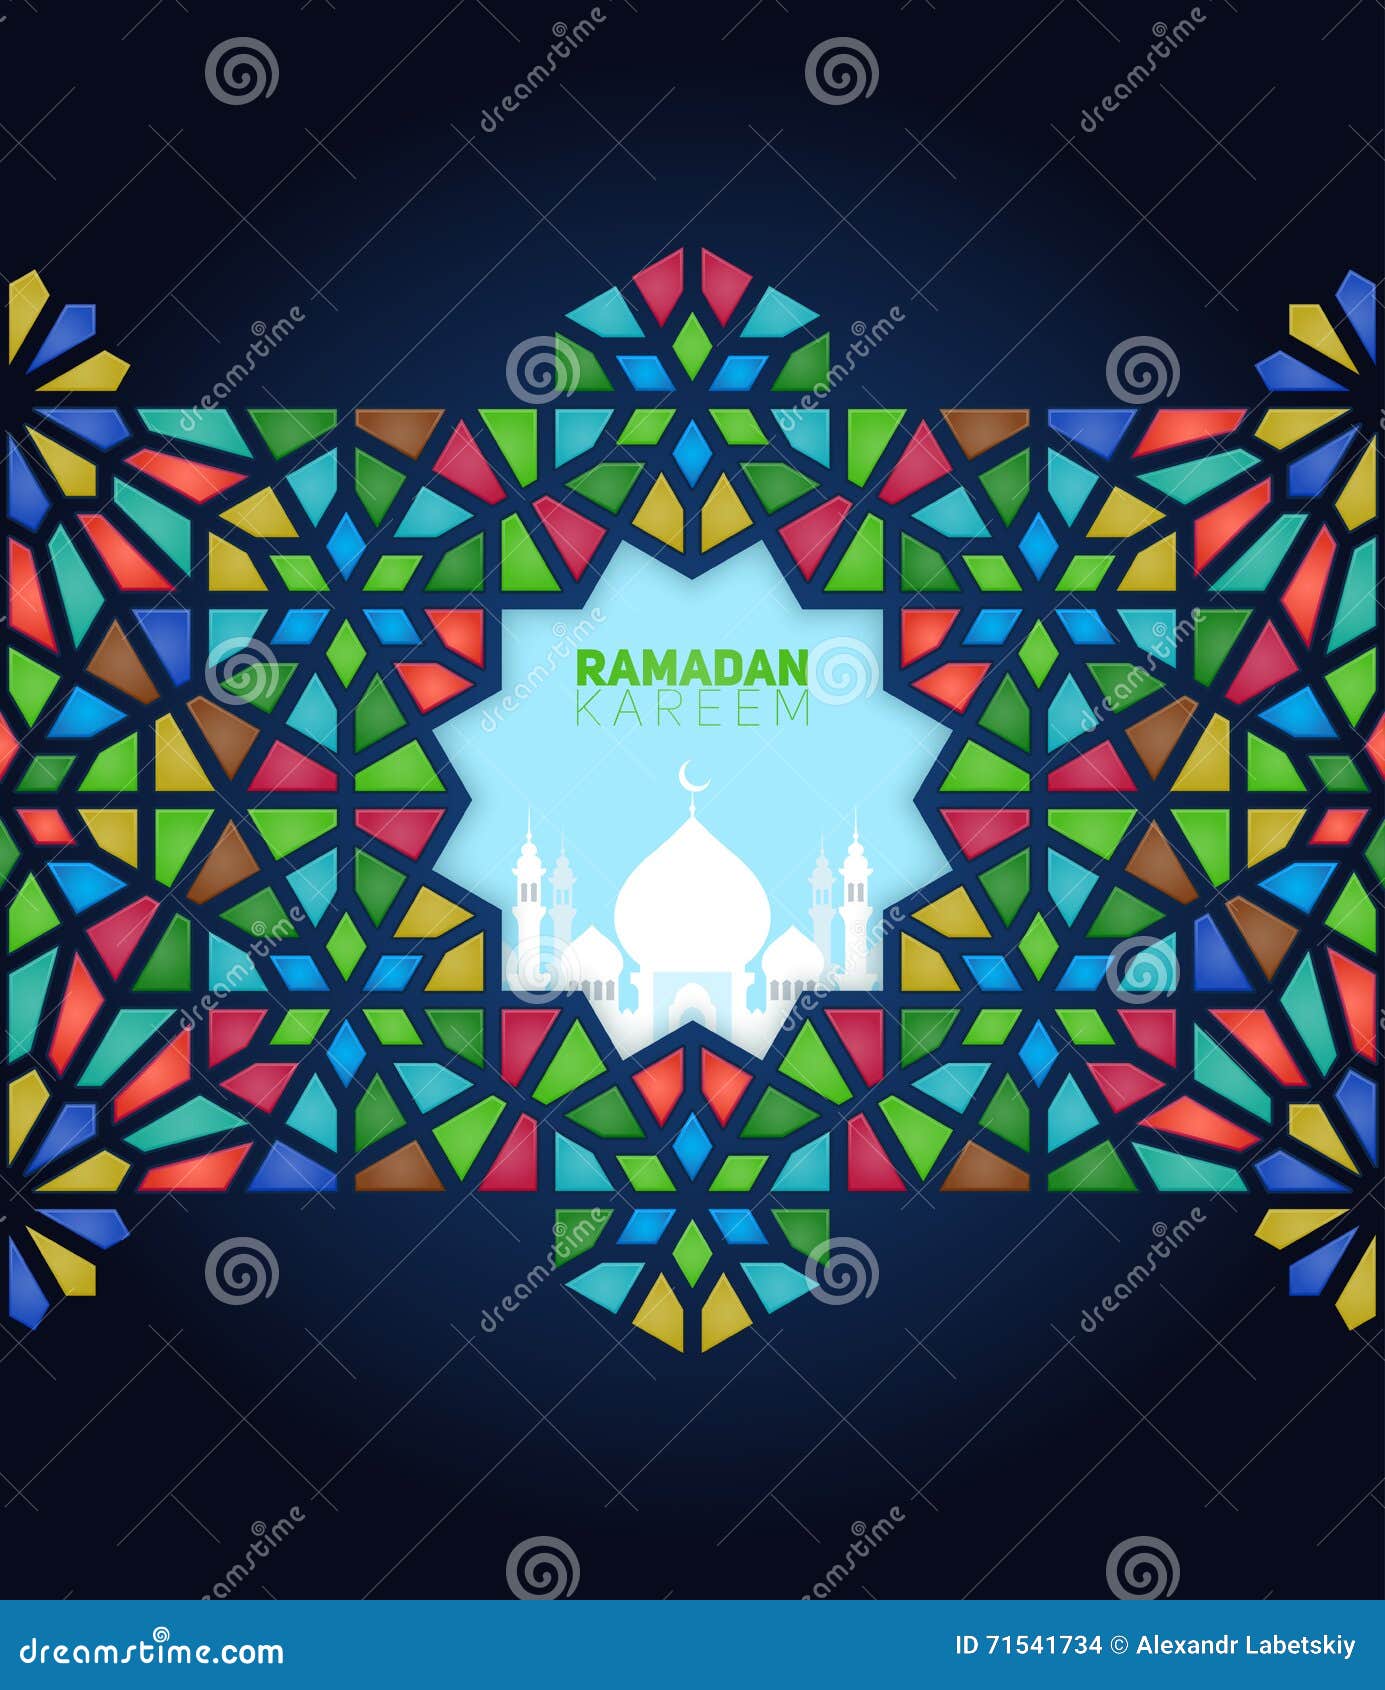   of ramadan